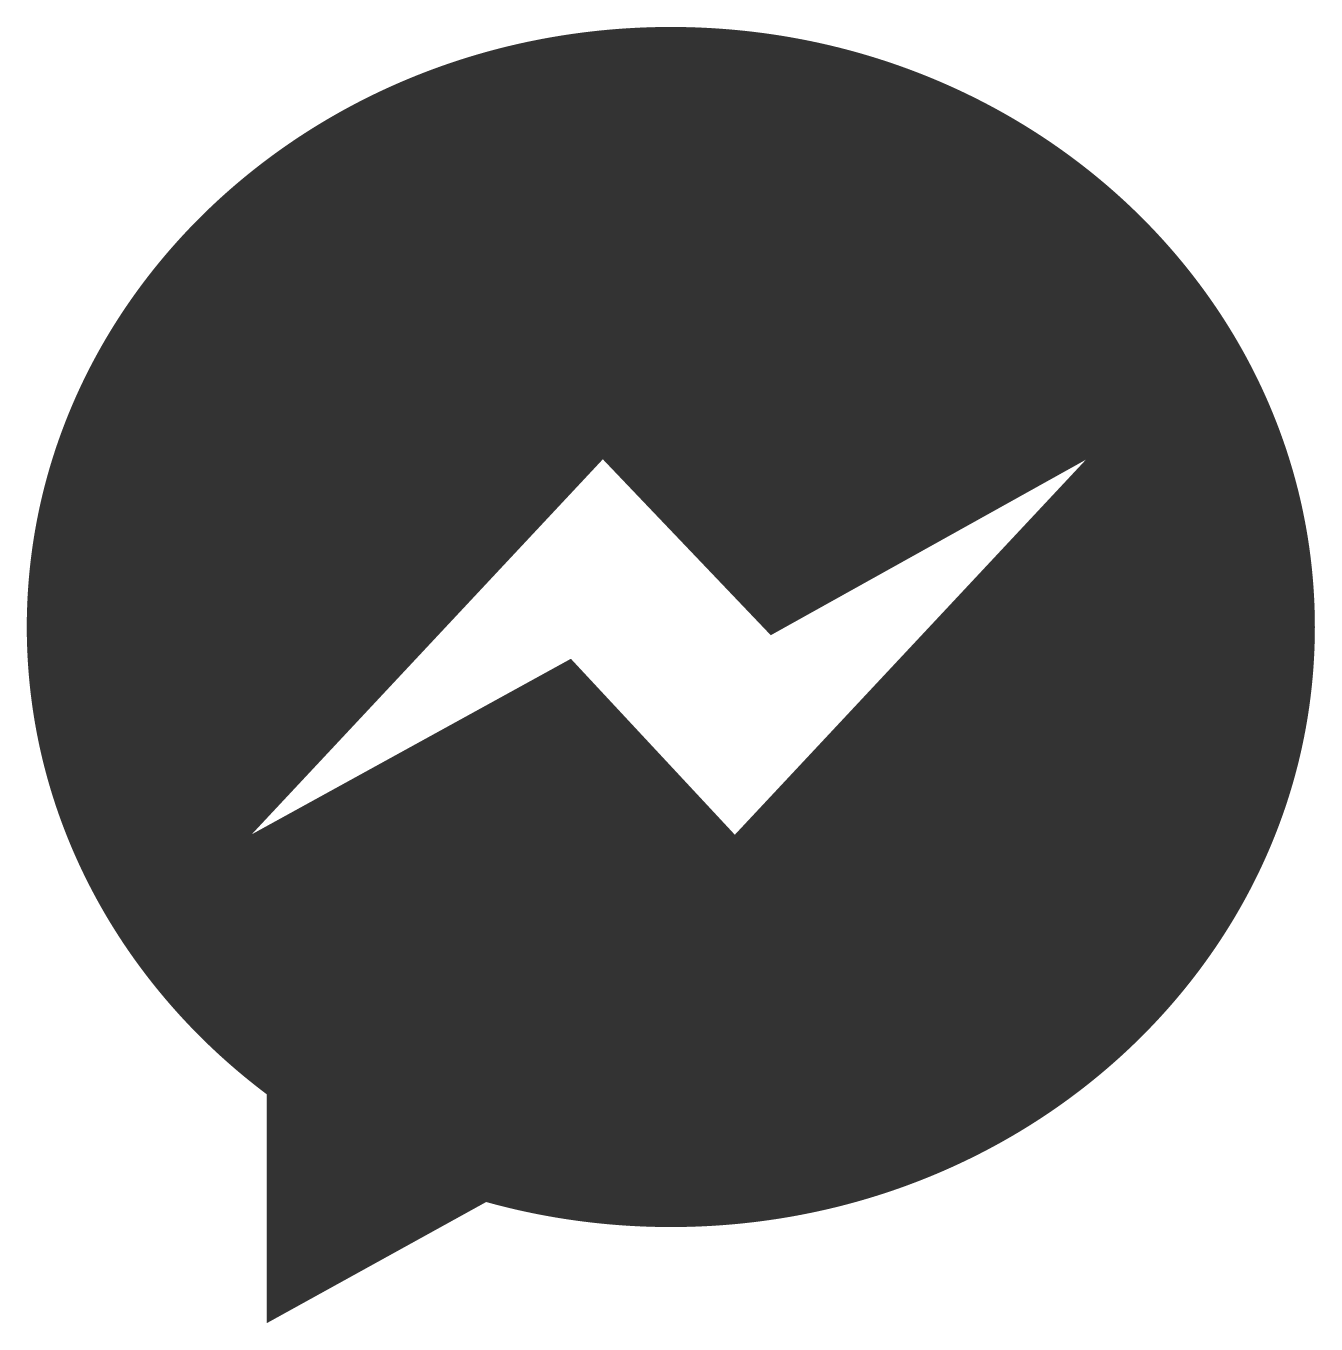 Facebook Messenger Logo PNG File